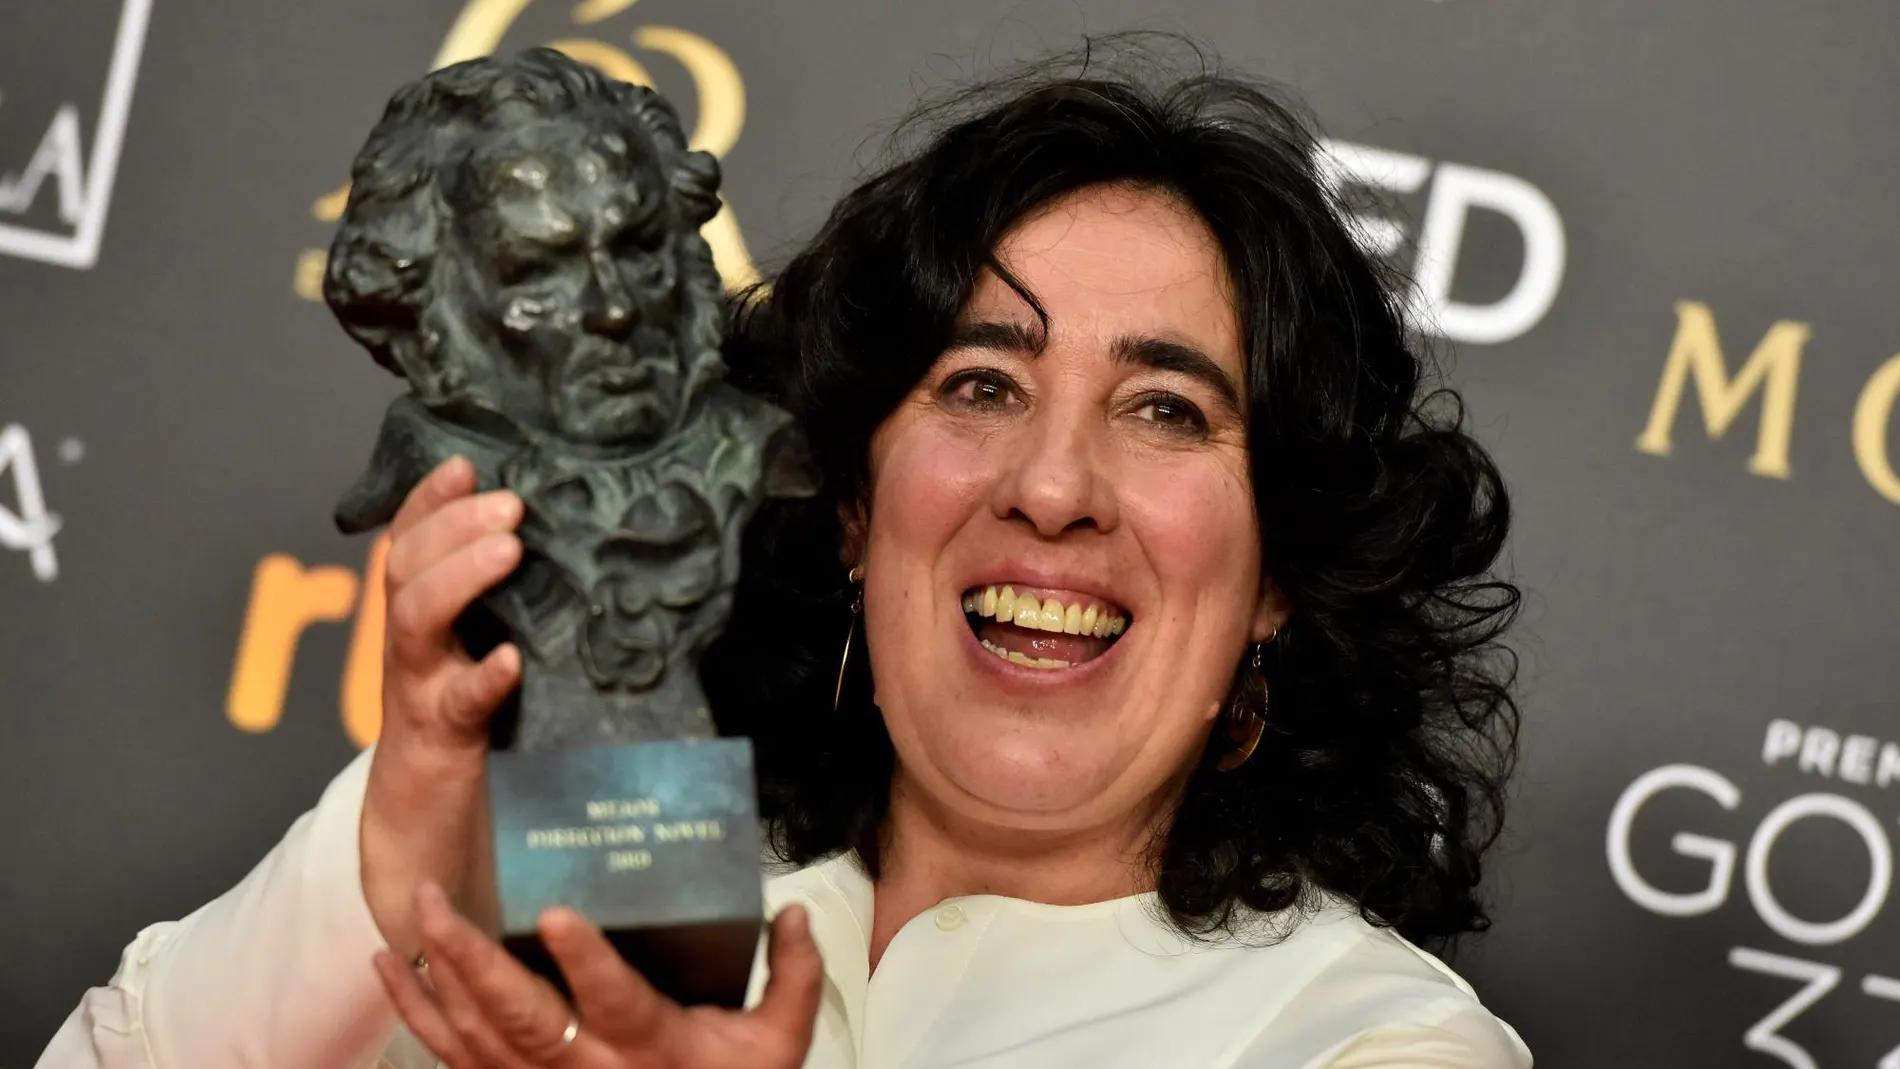 La realizadora Arantxa Echevarria tras recibir el premio a "Mejor dirección novel"por su película "Carmén y Lola"